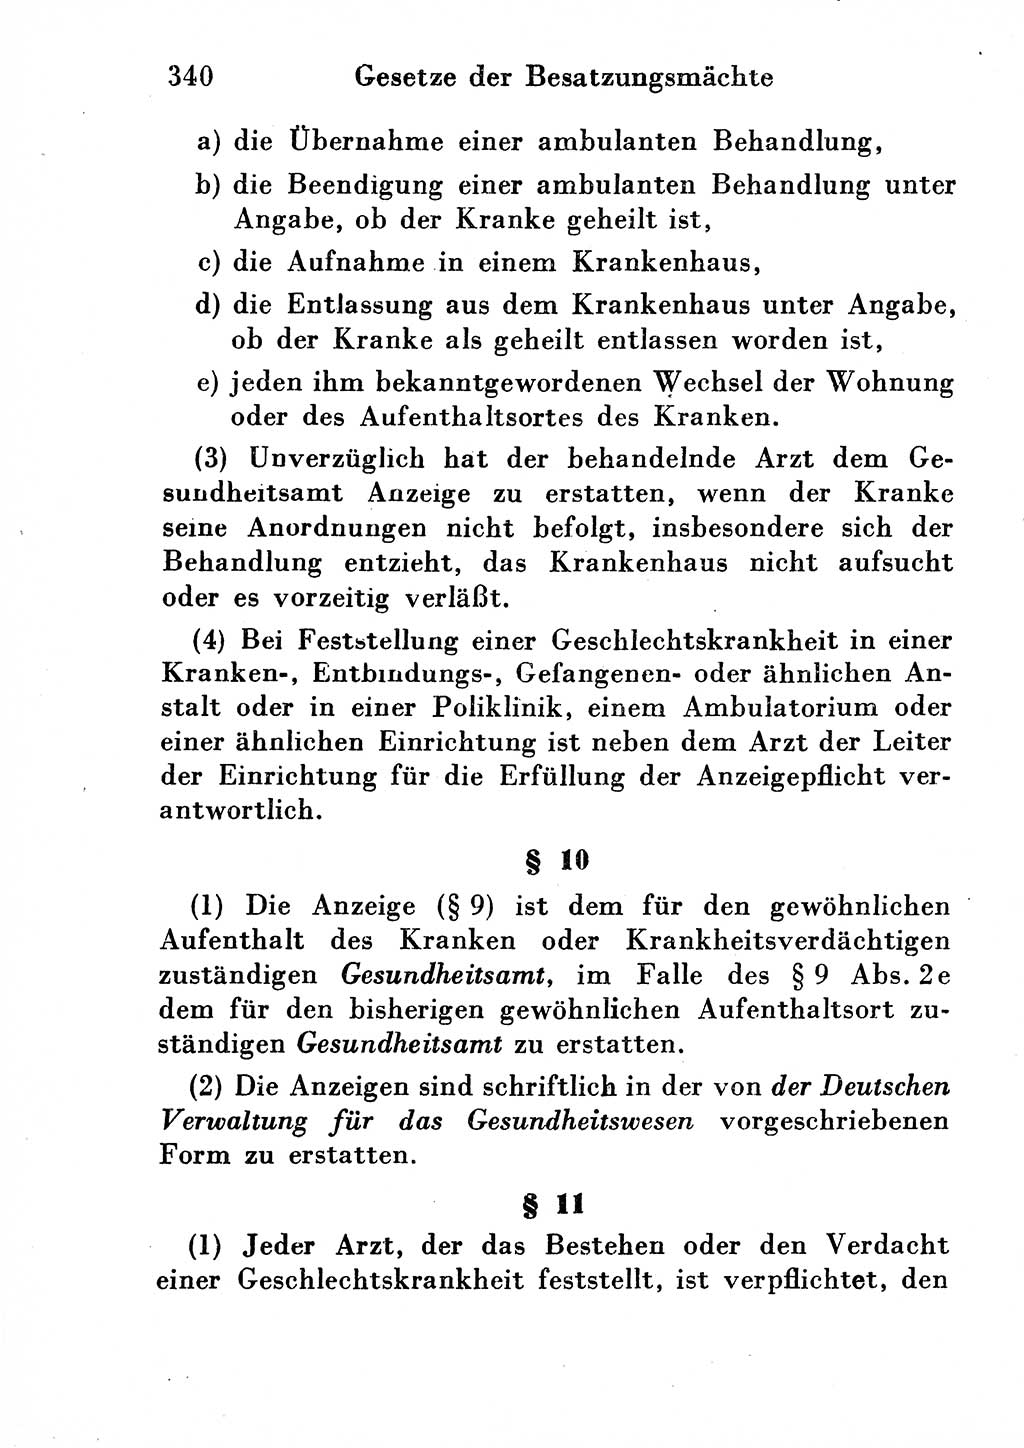 Strafgesetzbuch (StGB) und andere Strafgesetze [Deutsche Demokratische Republik (DDR)] 1954, Seite 340 (StGB Strafges. DDR 1954, S. 340)